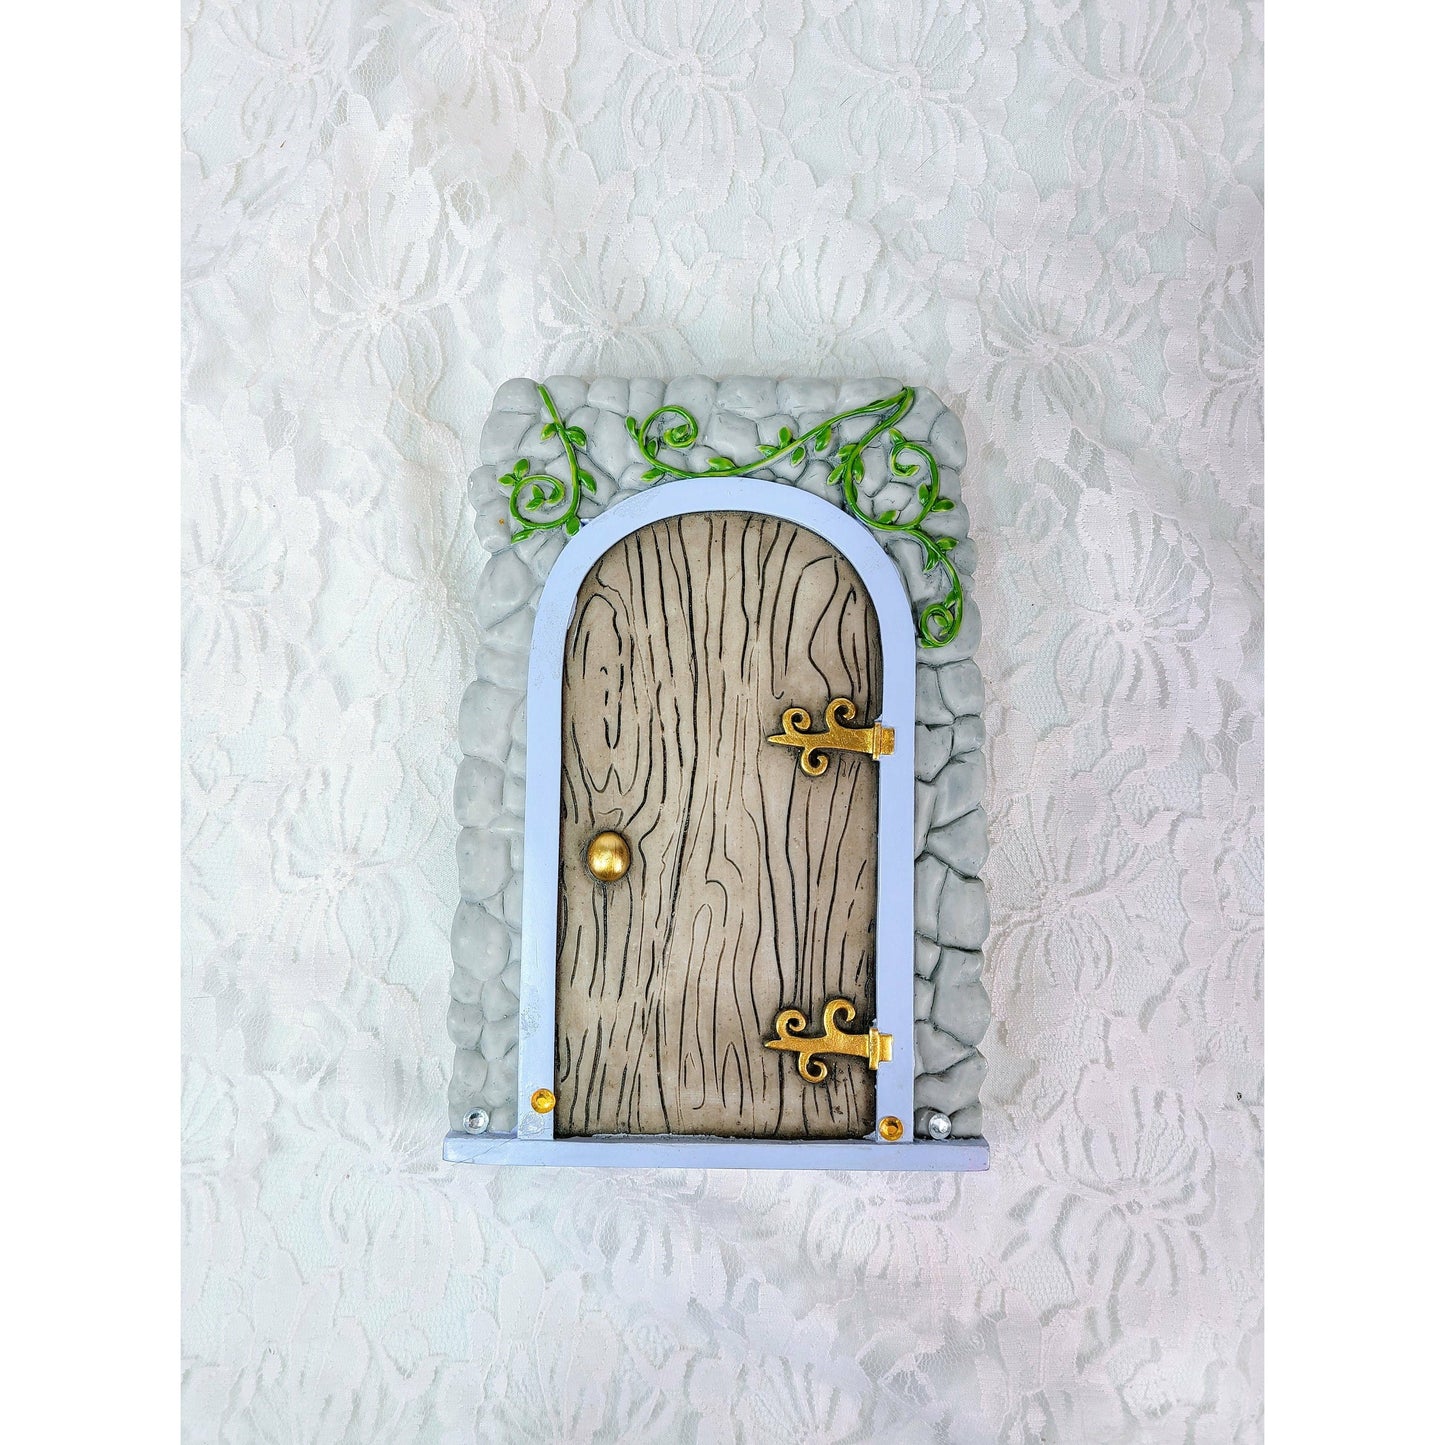 Hanging FAIRY DOOR ~ Fairy Cottage Door Plaque ~ Old English Style Faux FAERIE, Troll, Elf, Pixie Door ~ Wall / Tree Hanging Ornament Décor